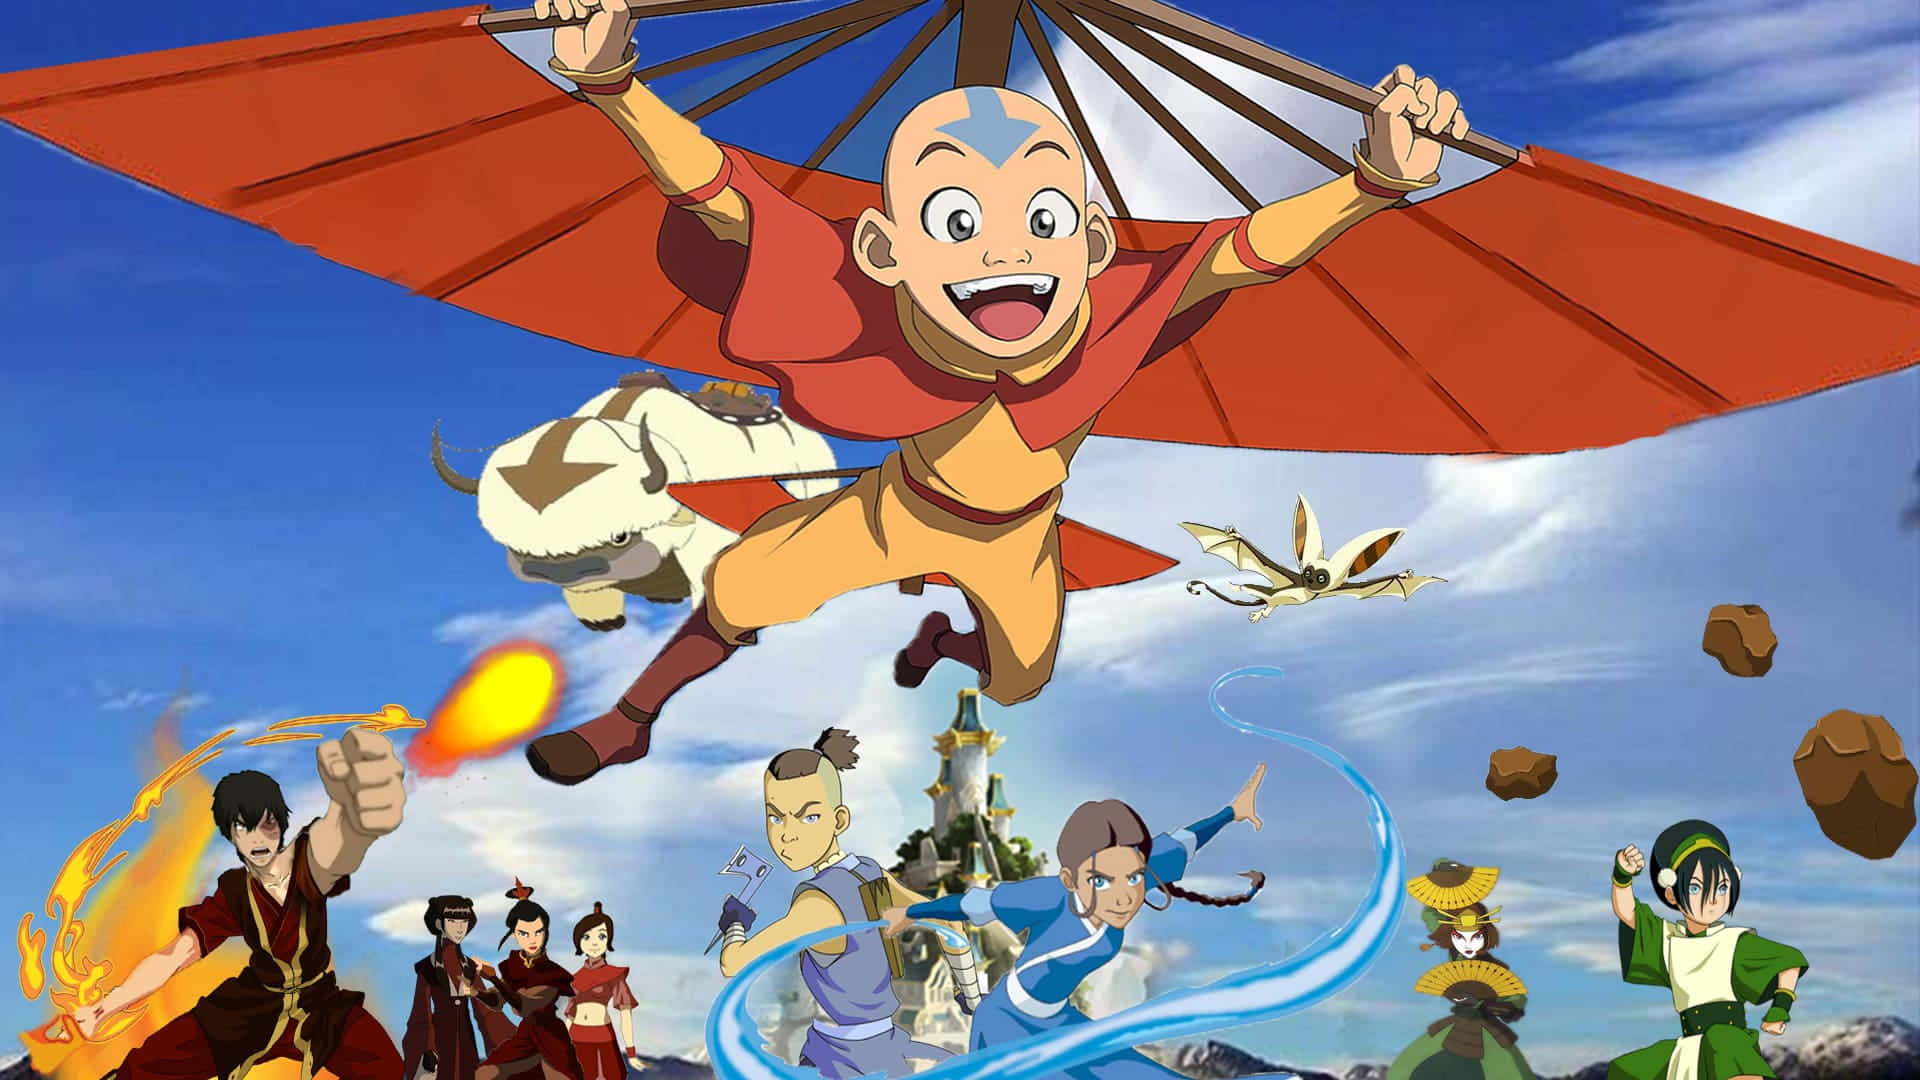 Prontoper La Battaglia: Aang, L'avatar Di Avatar - La Leggenda Di Aang